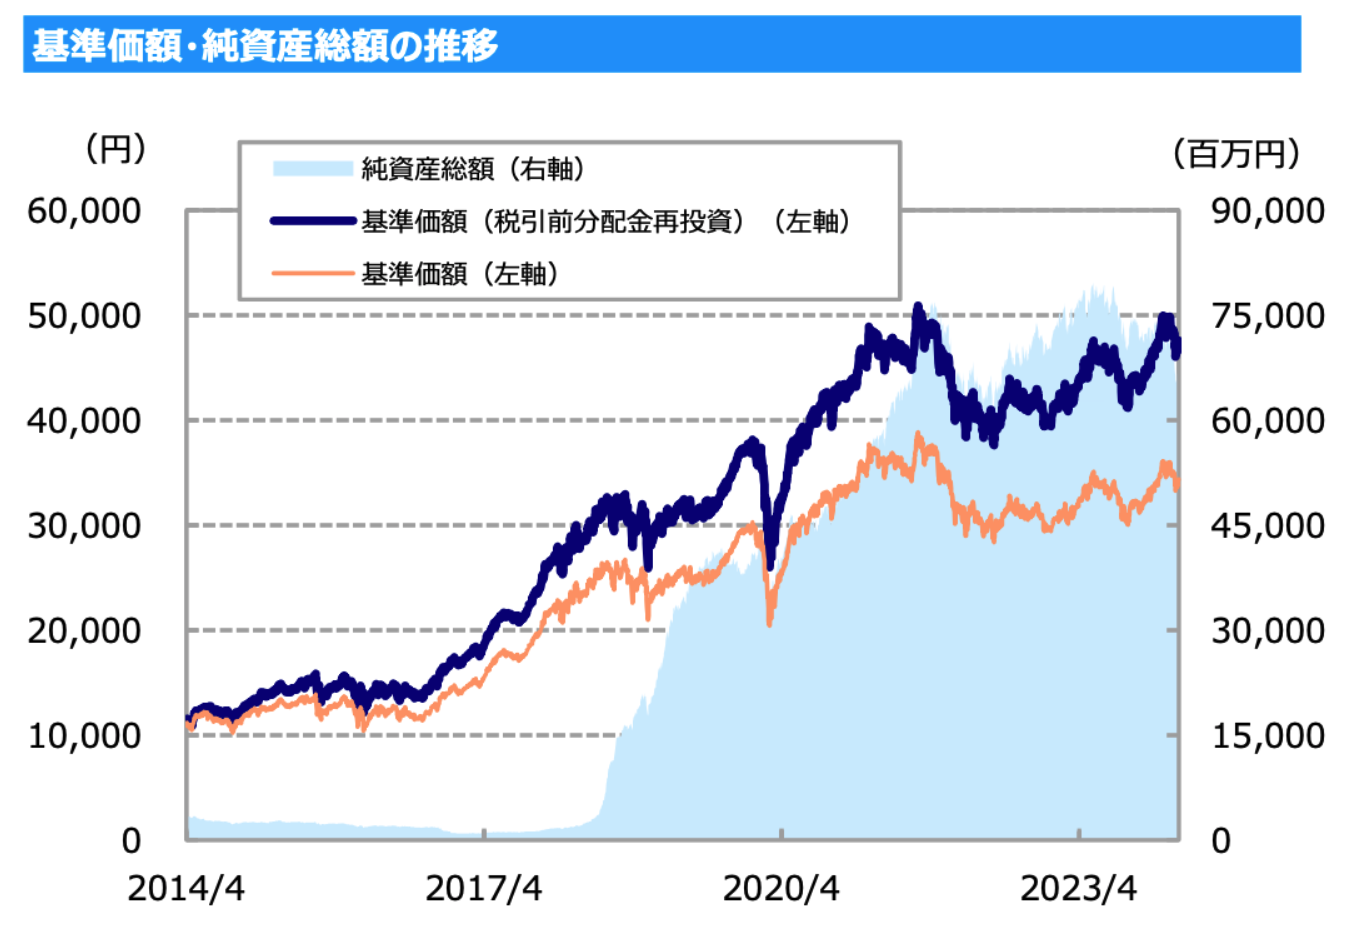 東京海上・ジャパン・オーナーズ株式オープンの基準価額の推移